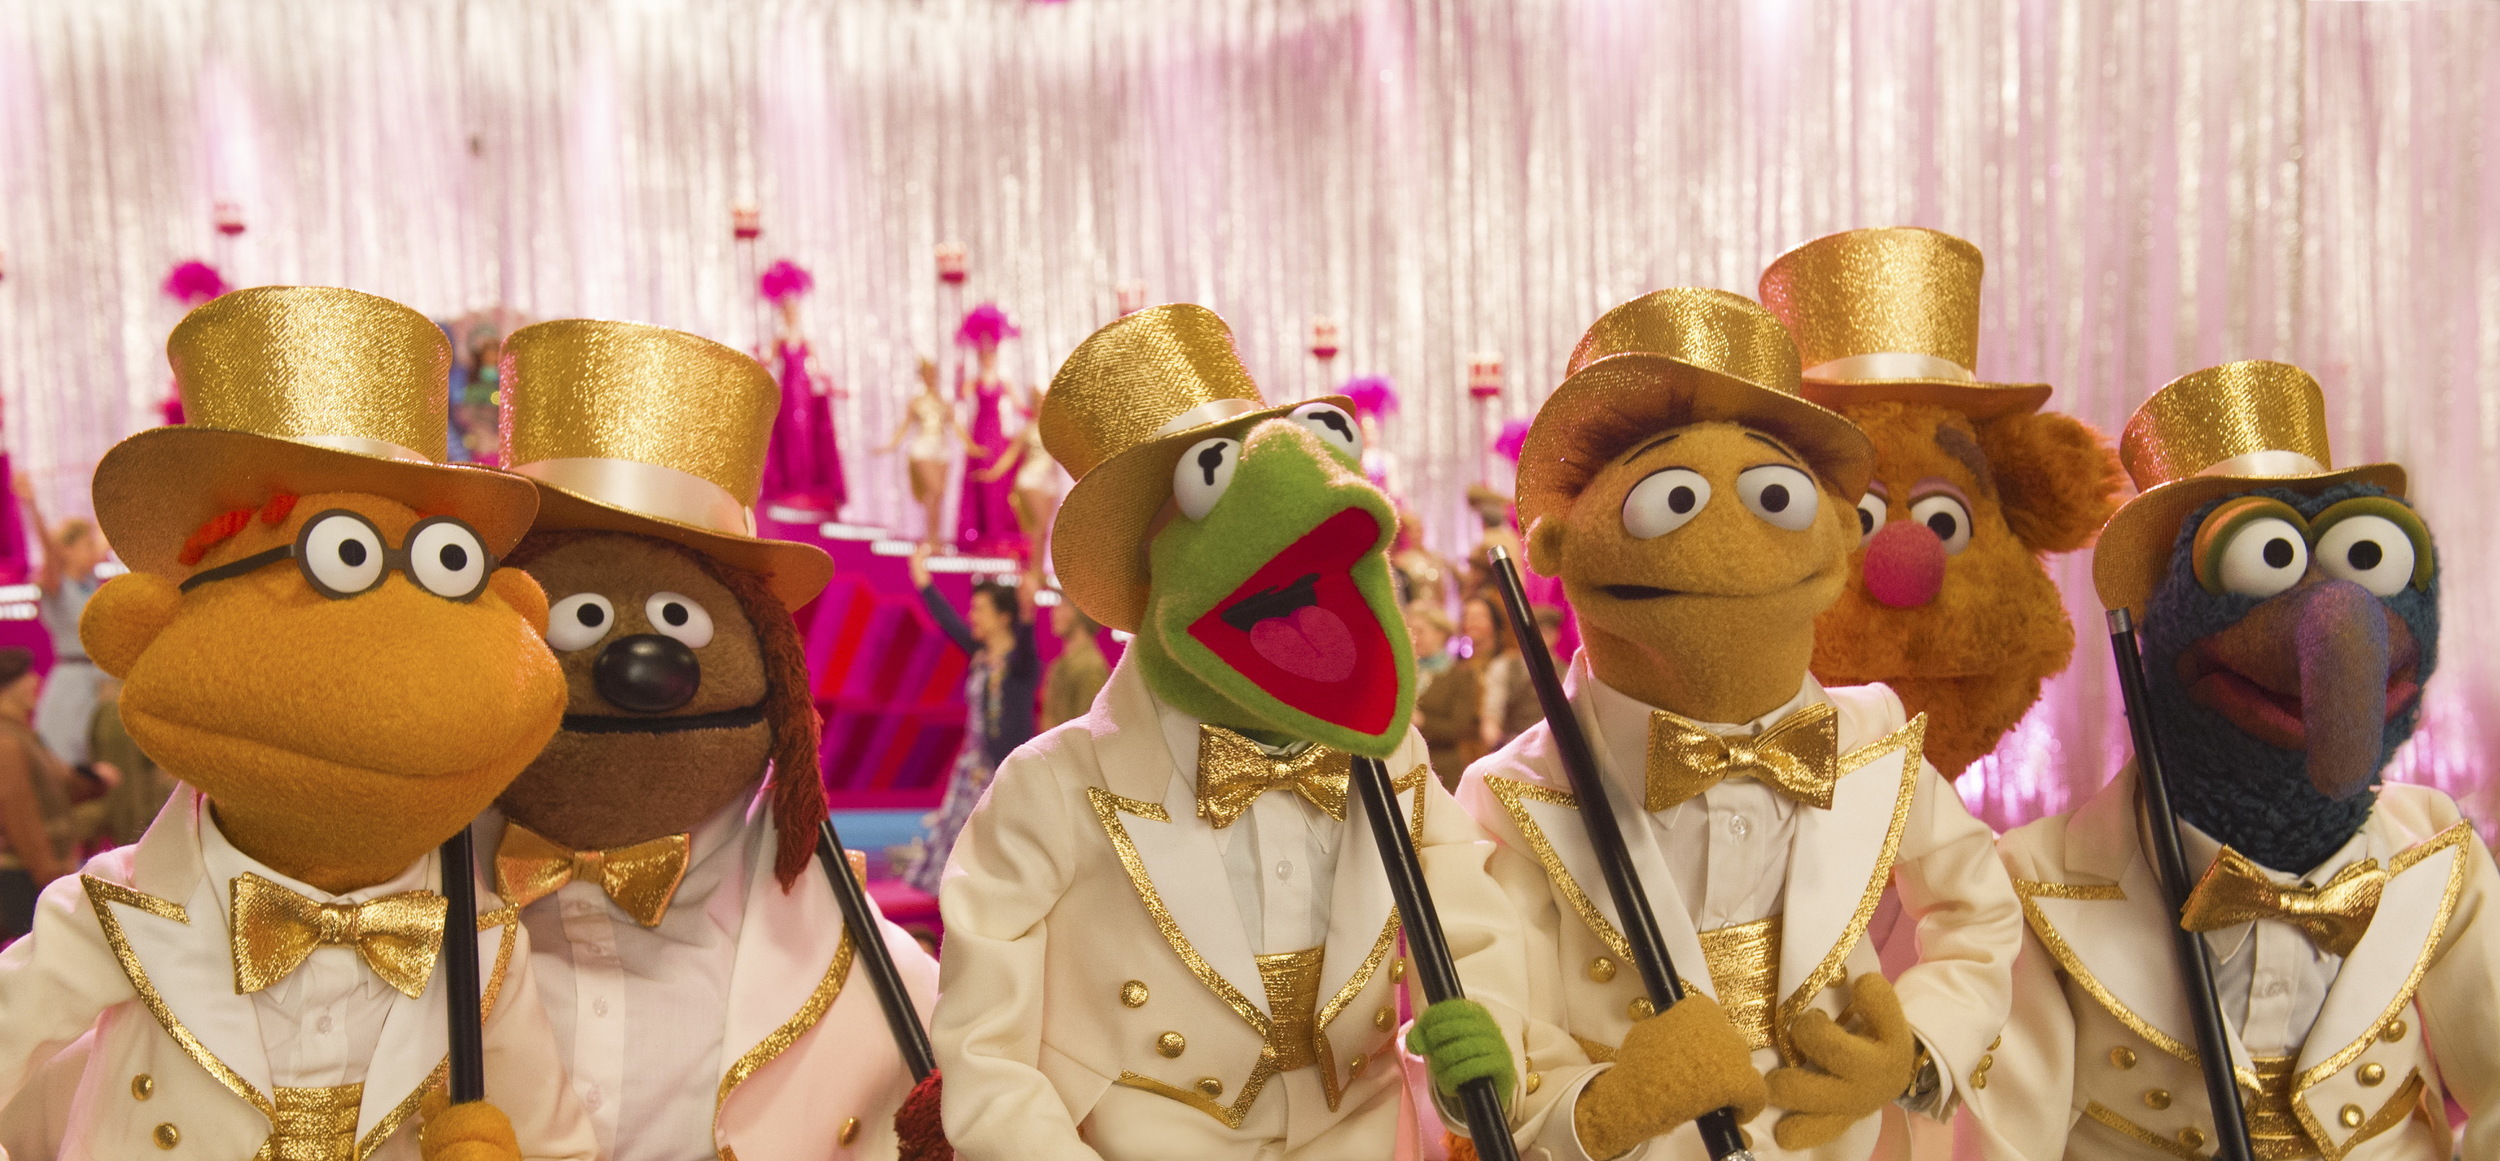 Puppet Heap — The Muppets